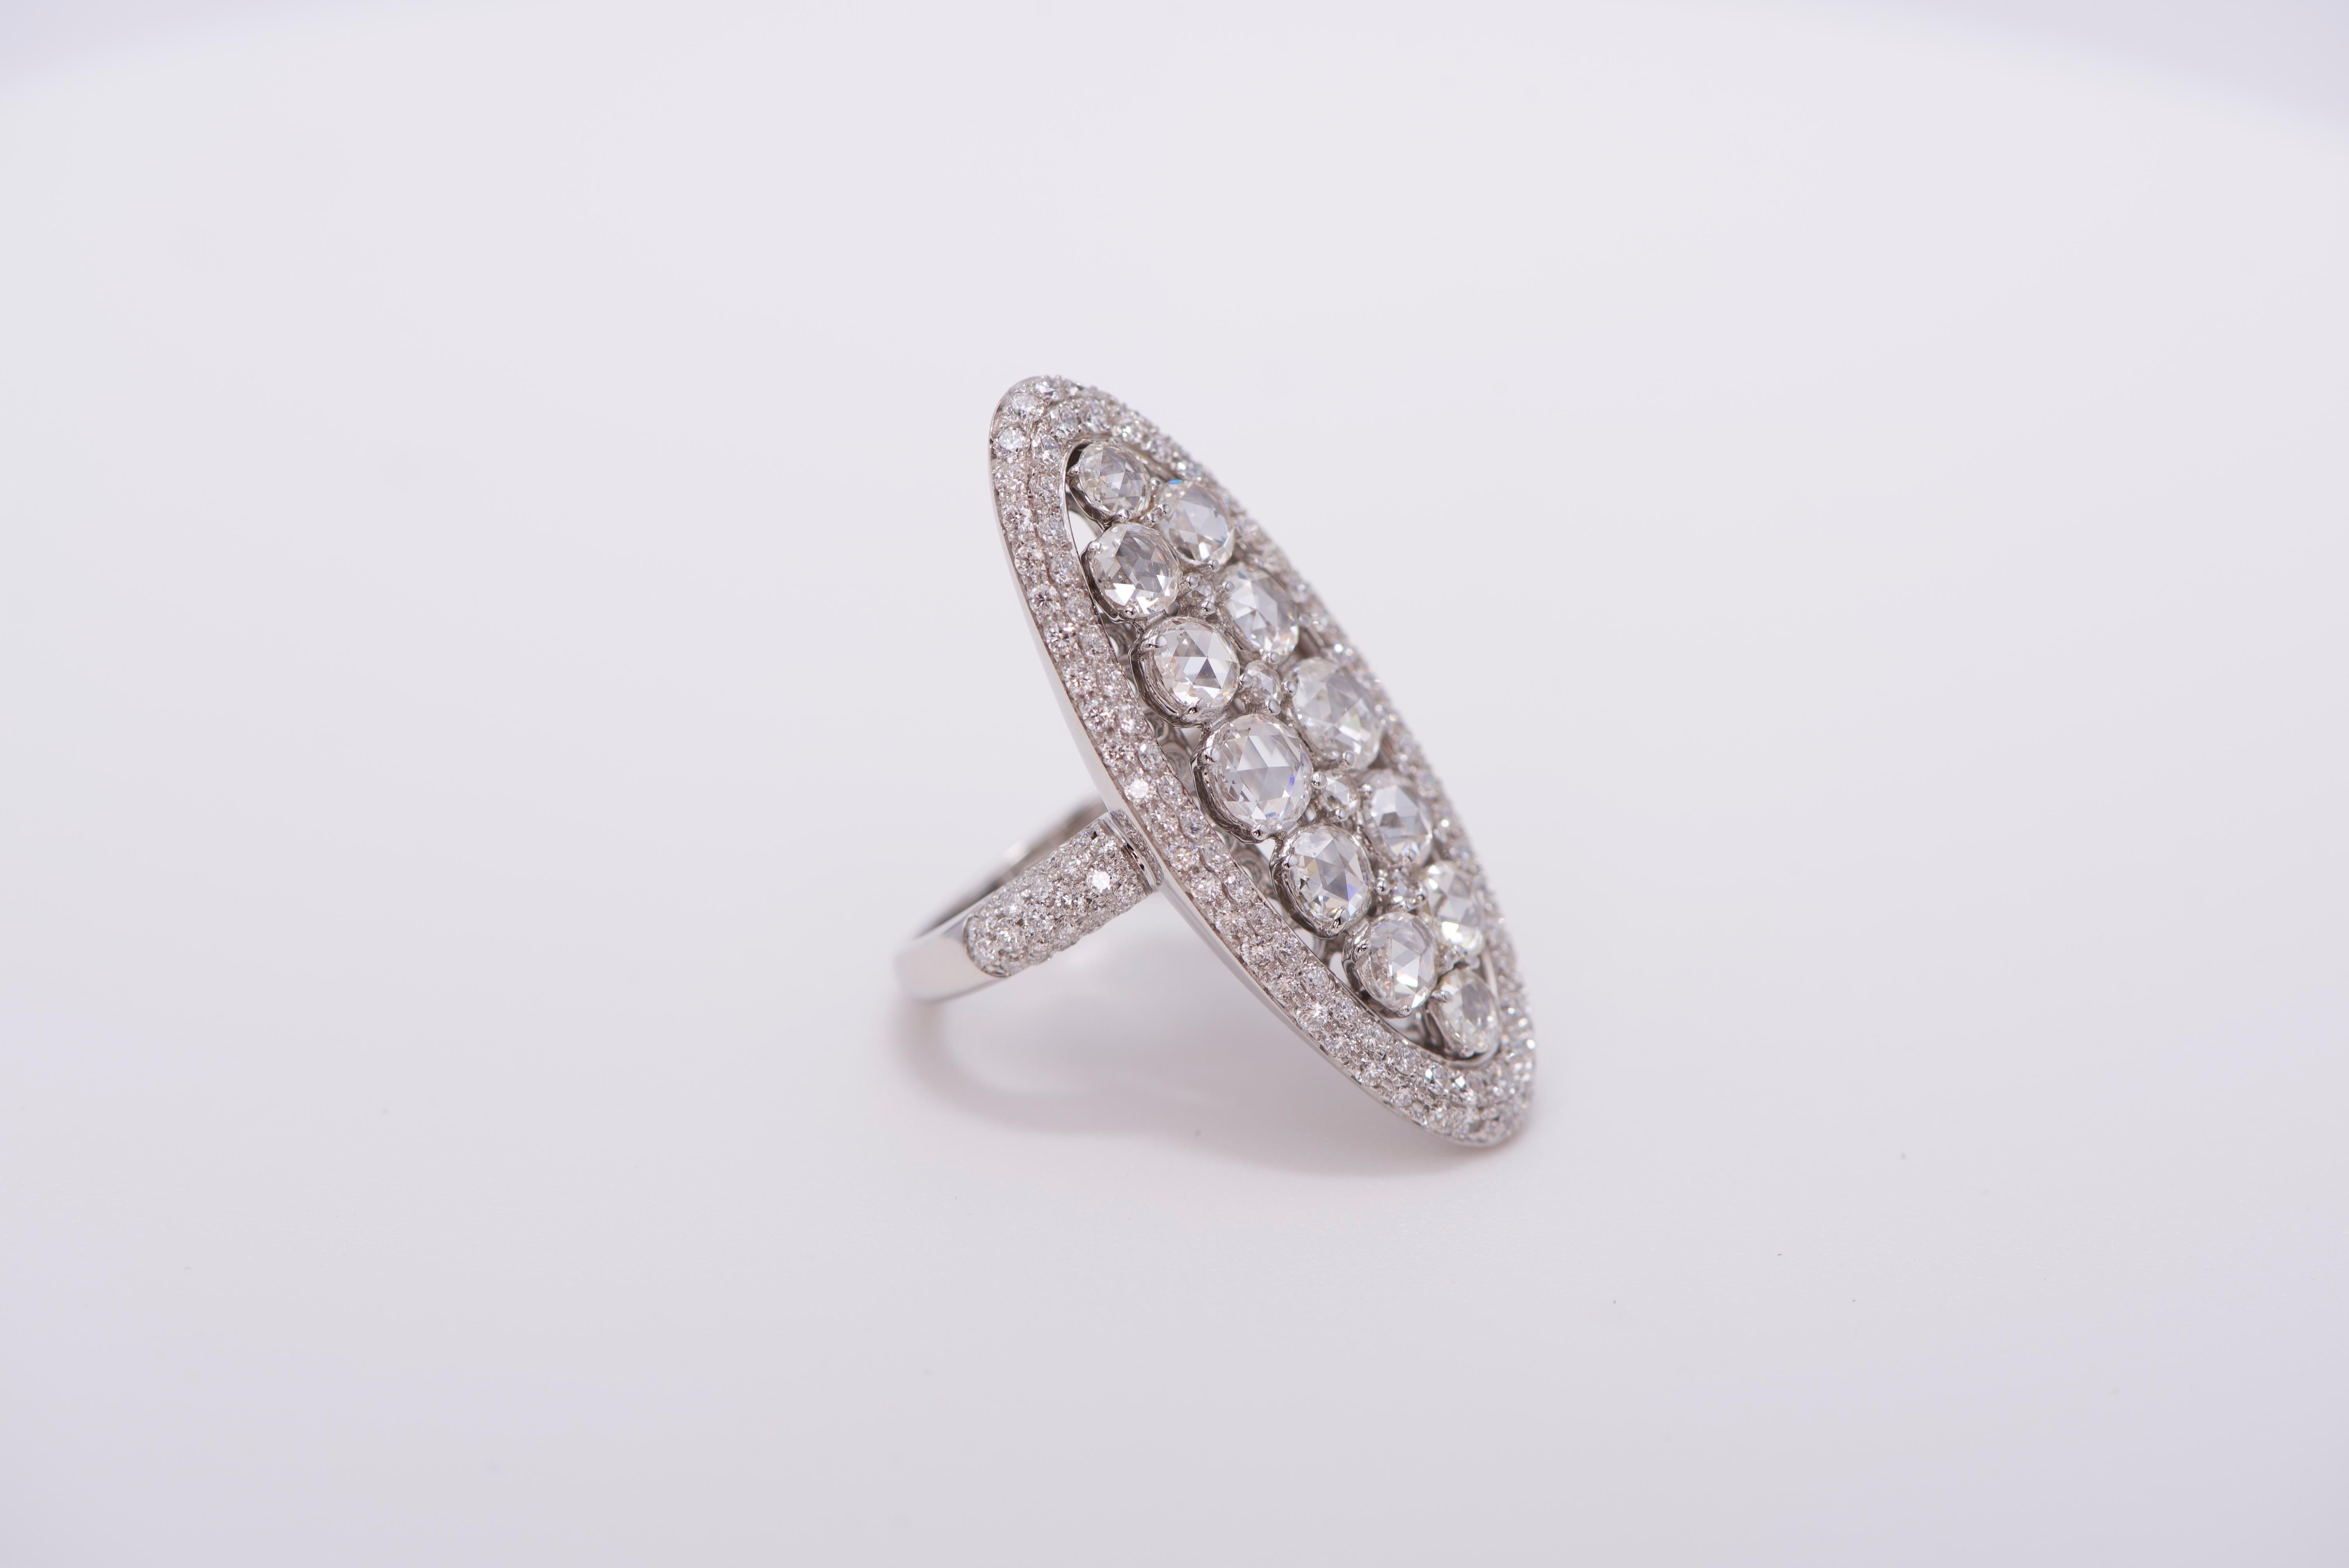 Bague de forme ovale en or blanc 18K avec des diamants blancs le long de la bordure, de la tige et au centre, environ 3,82 carats de diamants au total. 